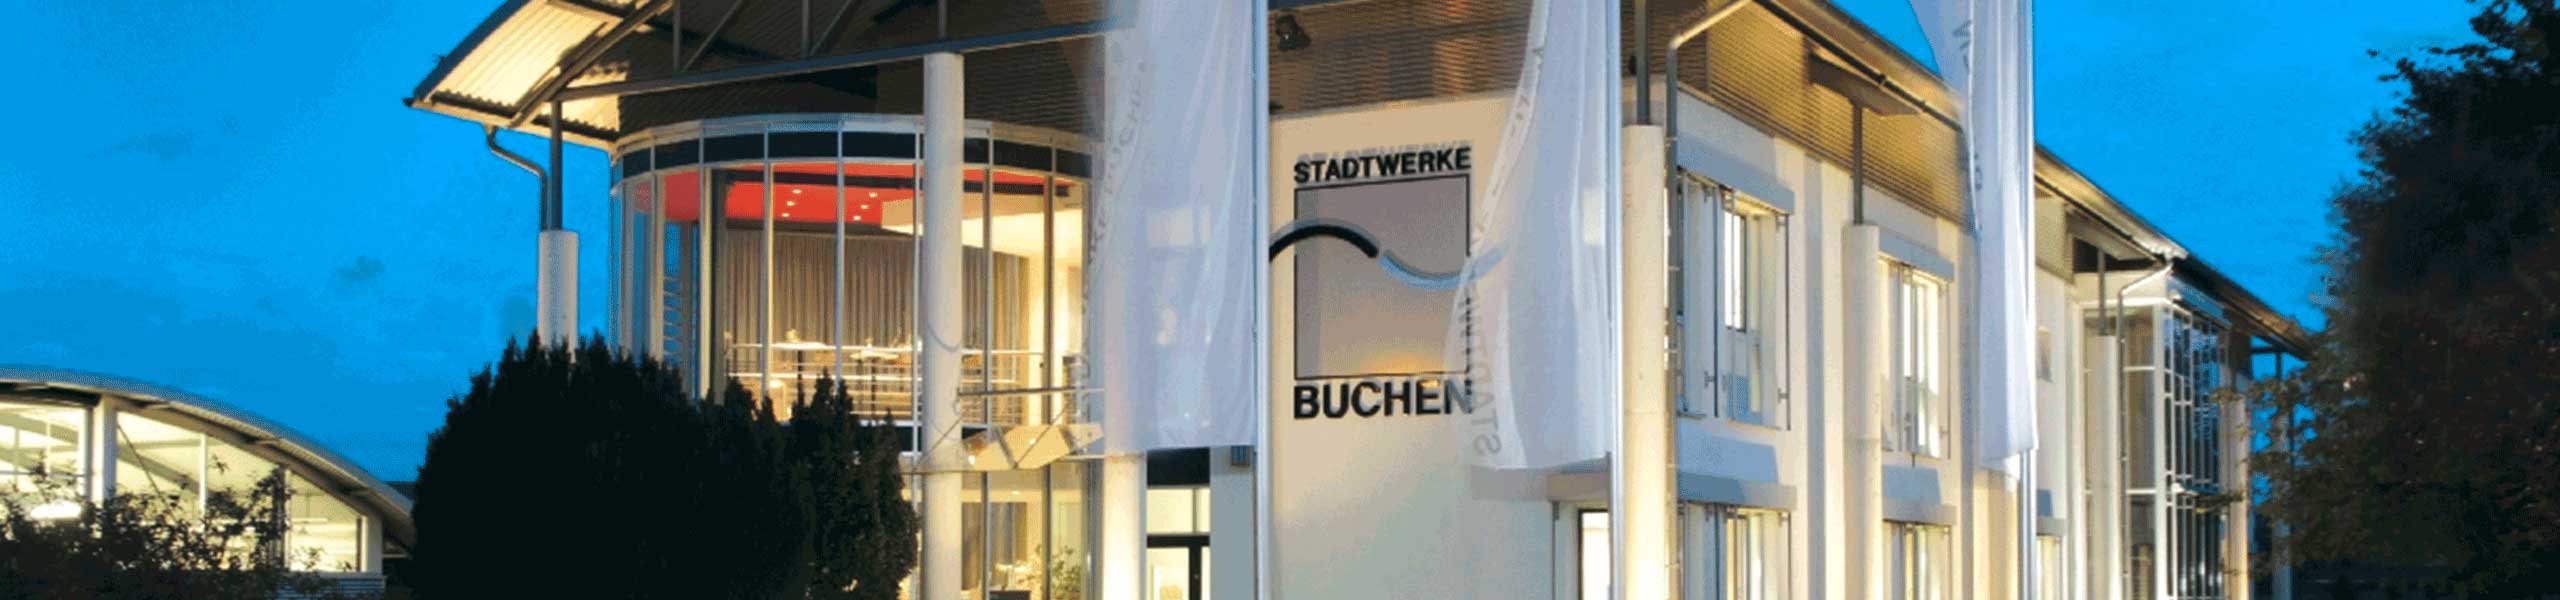 Stadtwerke Buchen GmbH & Co KG - Hintergrundinformation zum gemeinsamen Pressegespräch der Stadt Buchen und der Stadt Walldürn zur geplanten Kooperation der Stadtwerke Buchen und Walldürn